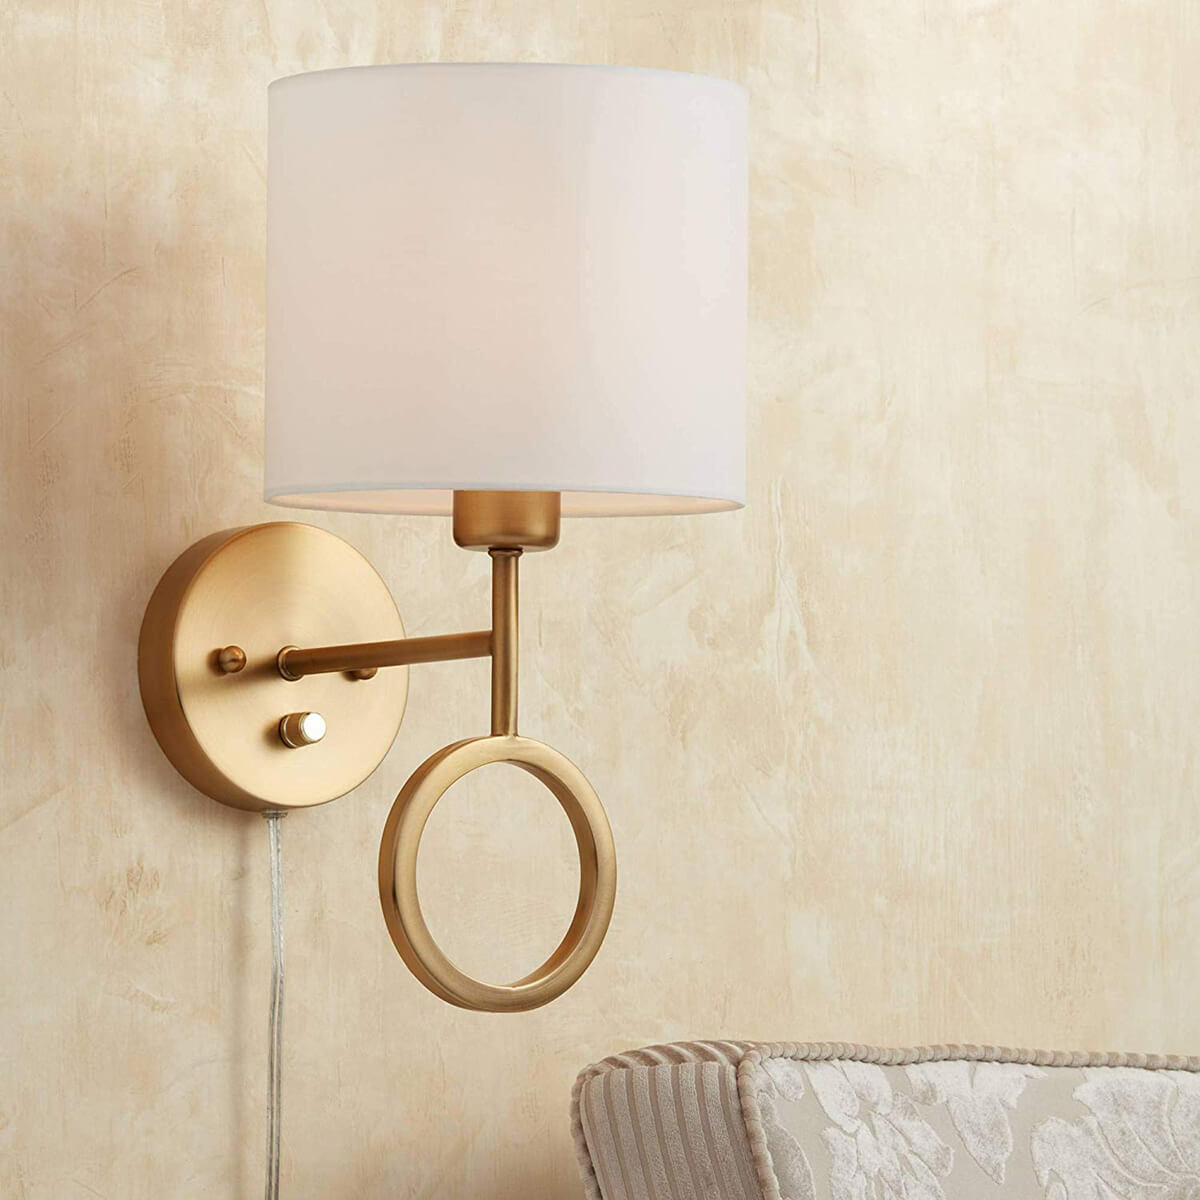 Artistic and Circular Brass Drop Plug Wall Light